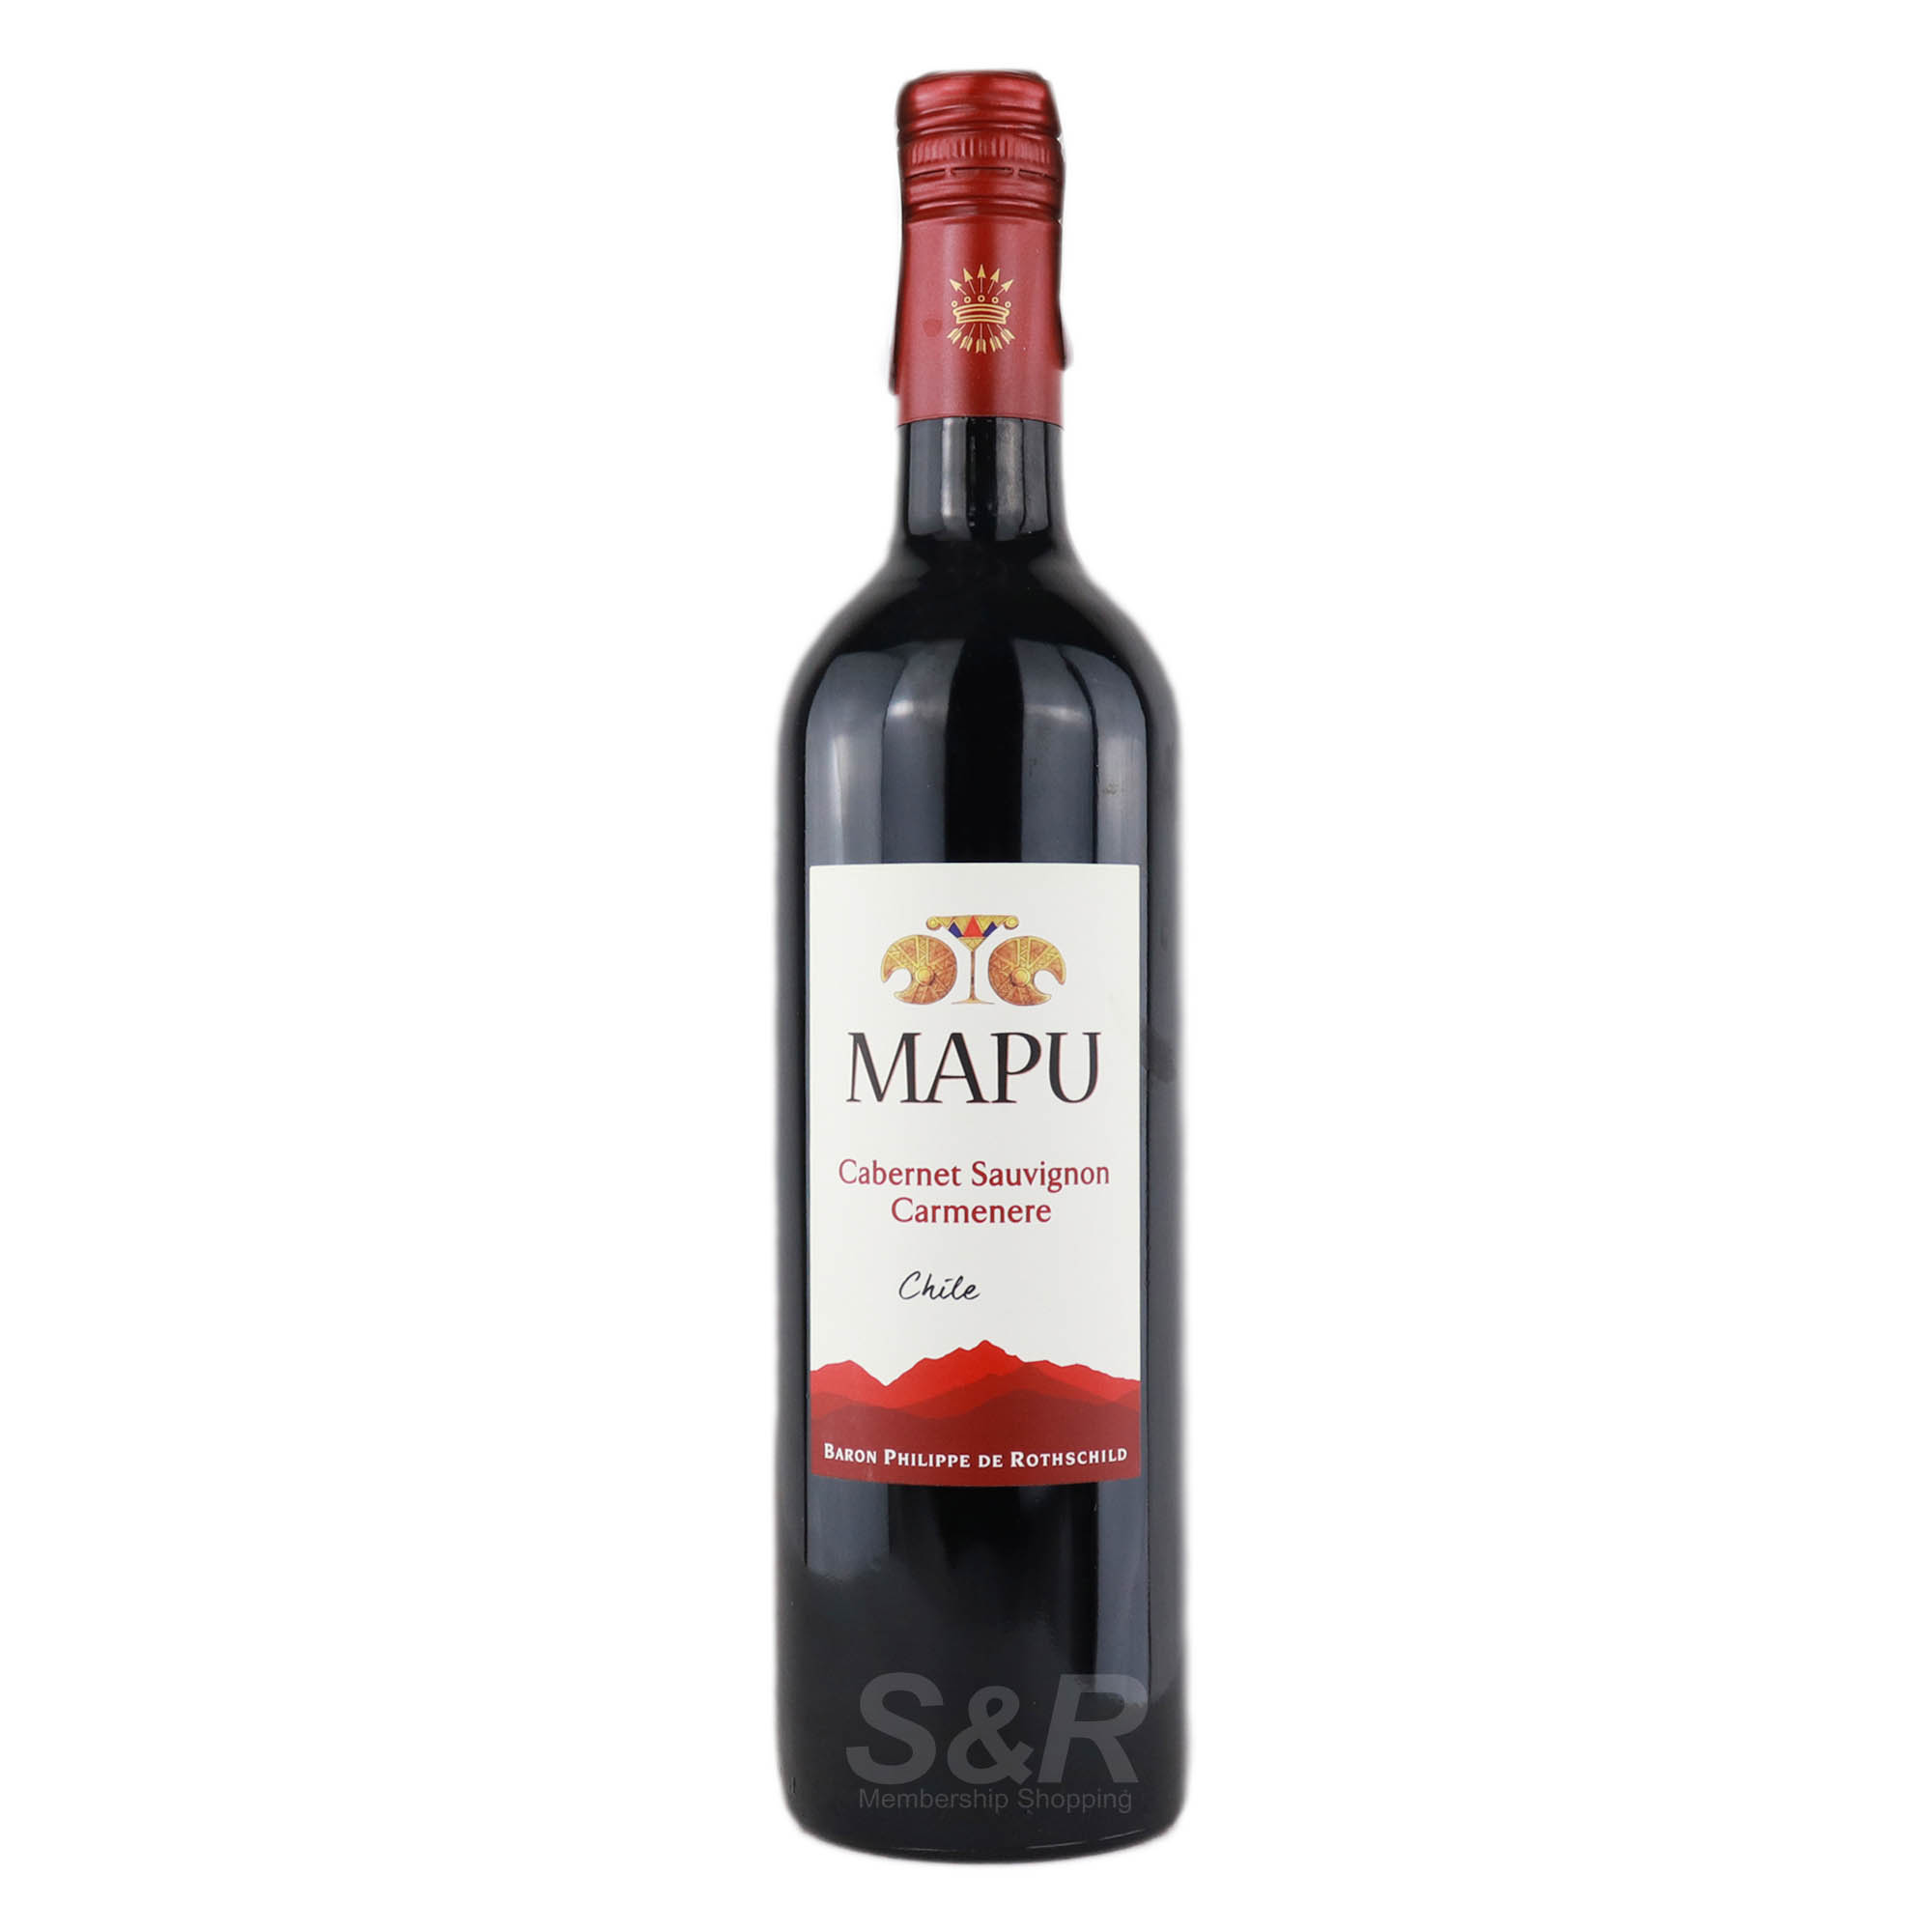 Mapu Cabernet Sauvignon Carmenere Chile Red Wine 750mL